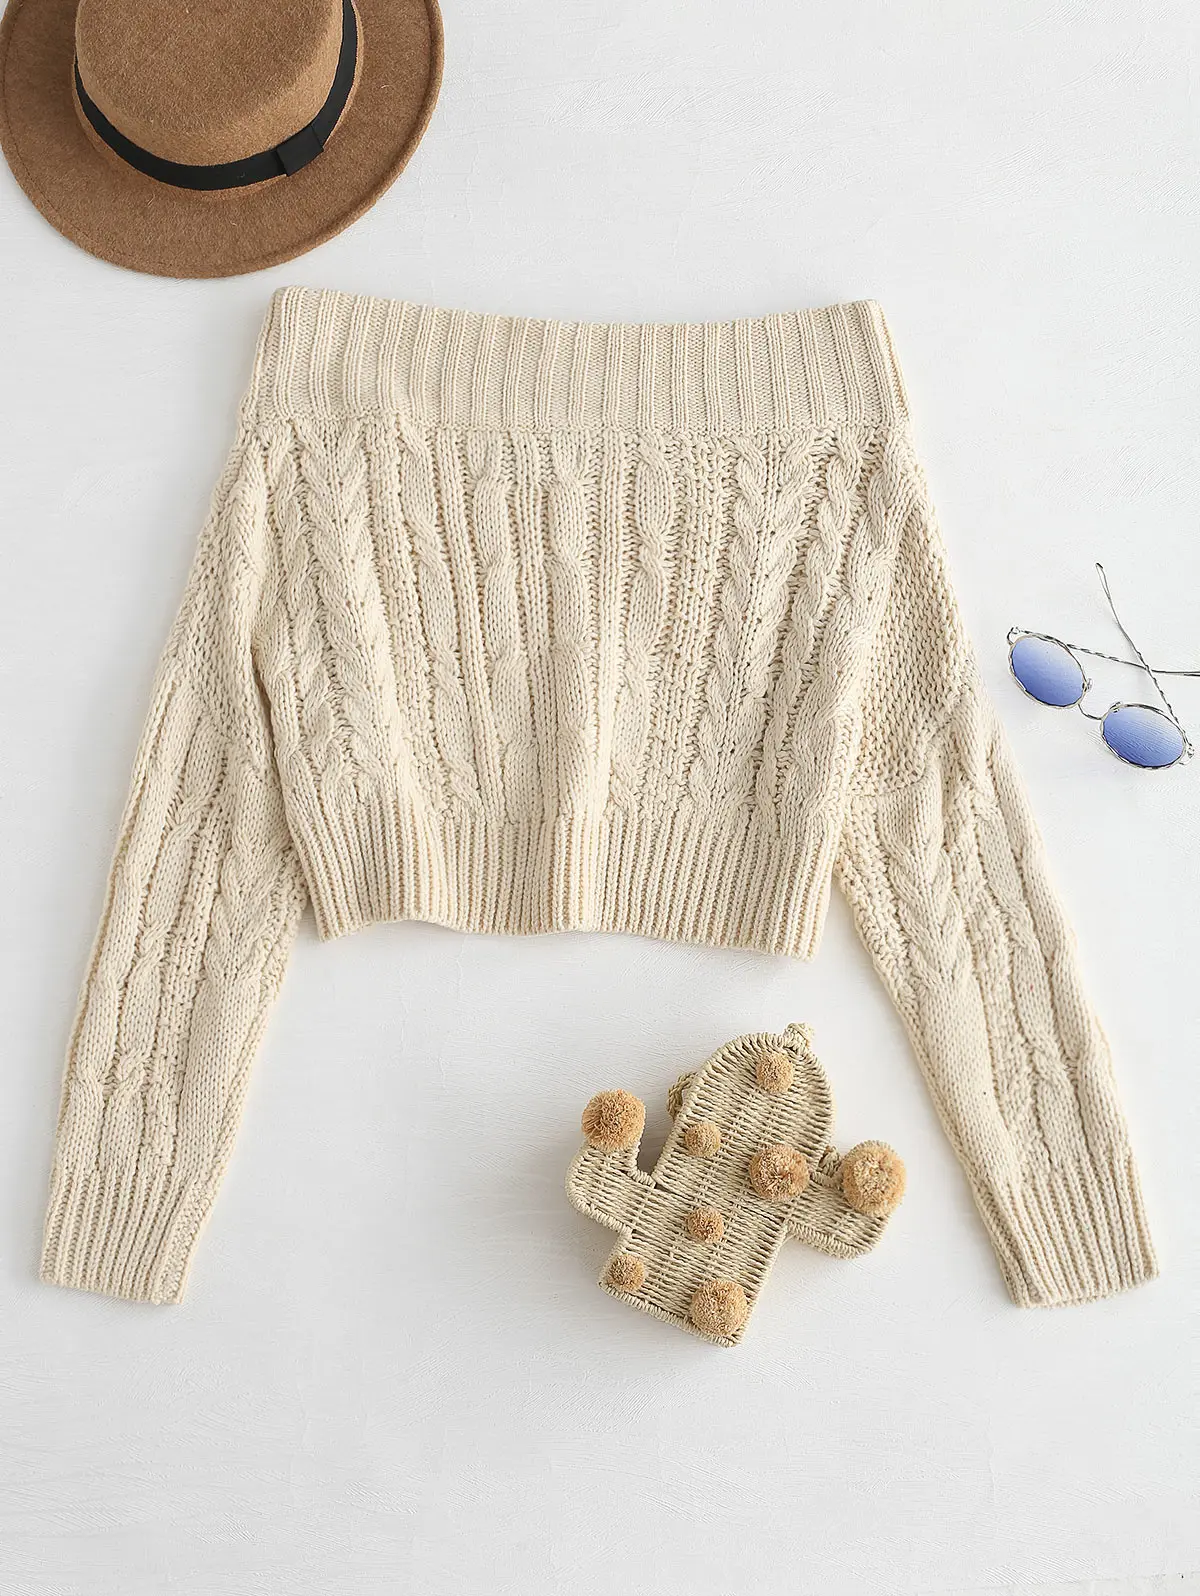 ZAFUL/свитера с открытыми плечами; вязаный свитер; джемпер; трикотажные пуловеры с длинными рукавами; топы; укороченный свитер; уличная одежда; сезон осень